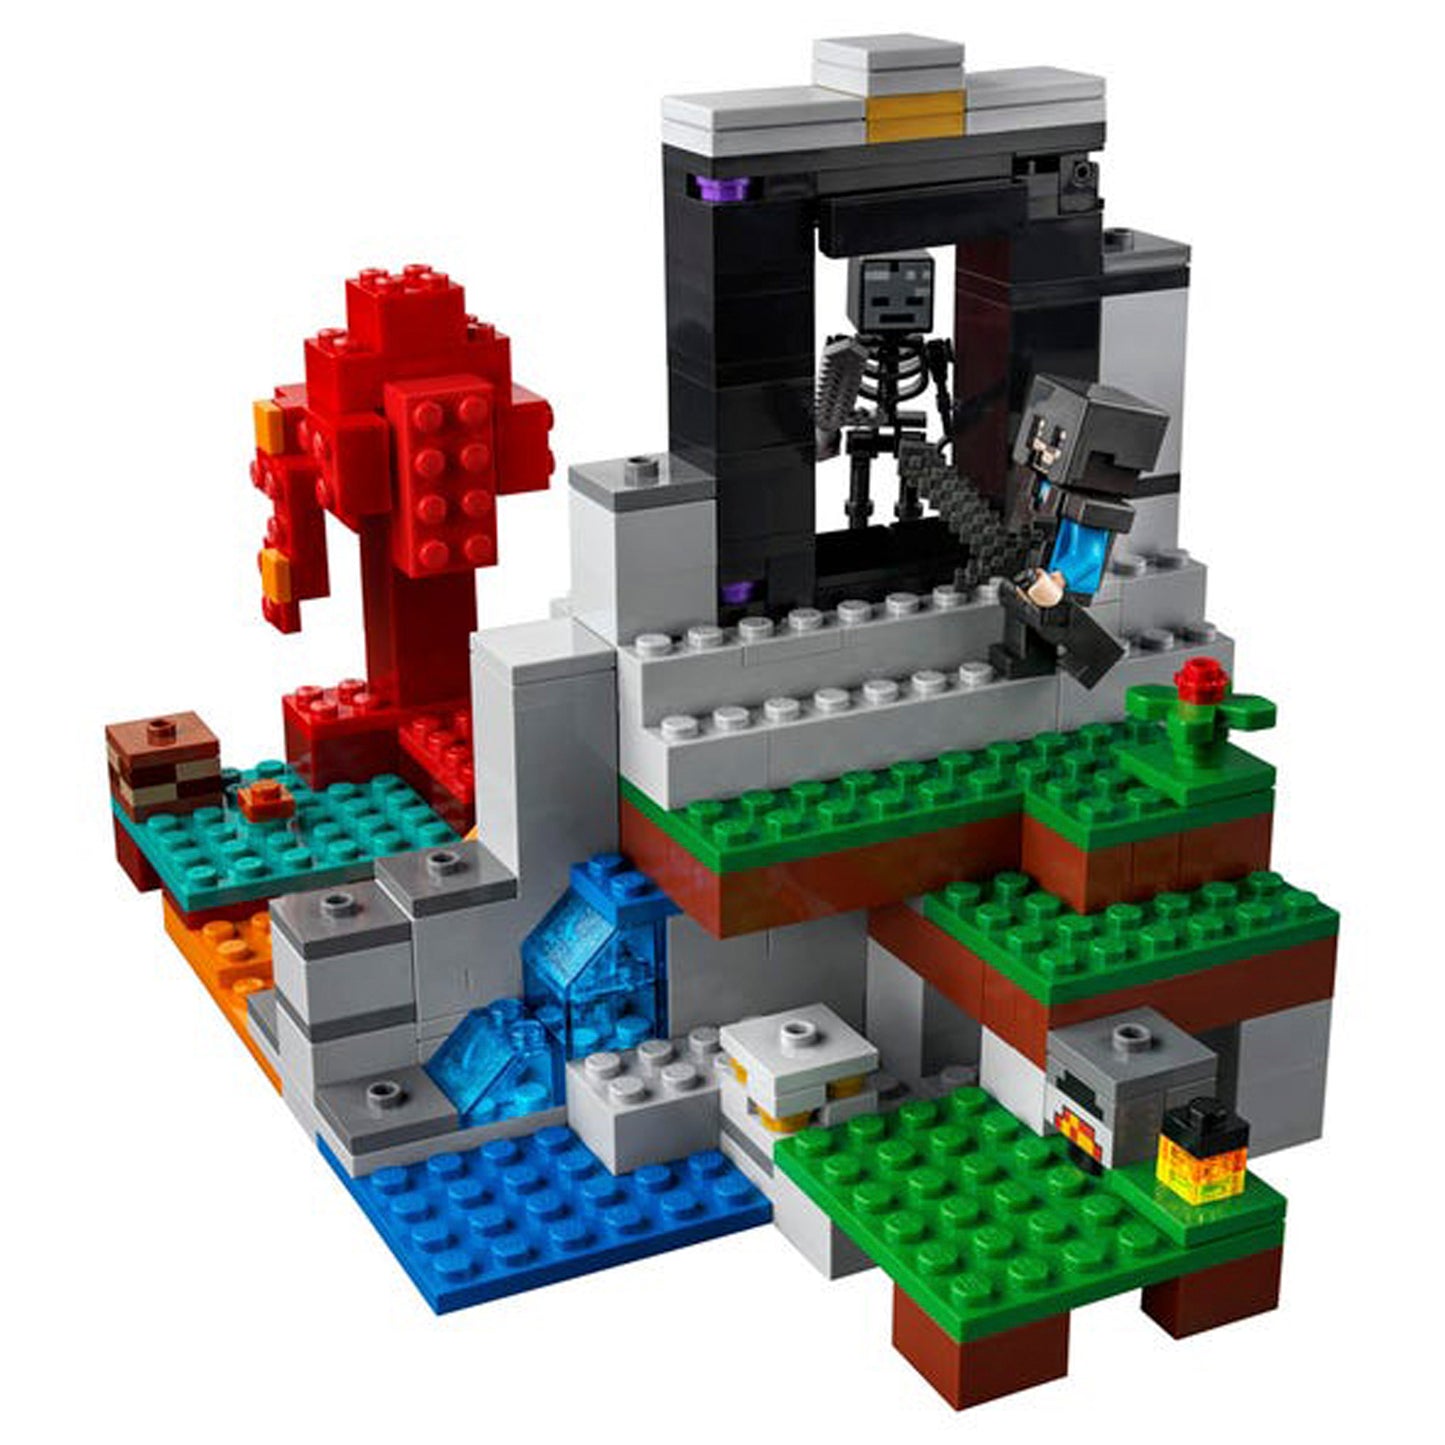 Lego Minecraft El Portal En Ruinas 21172 - Crazygames